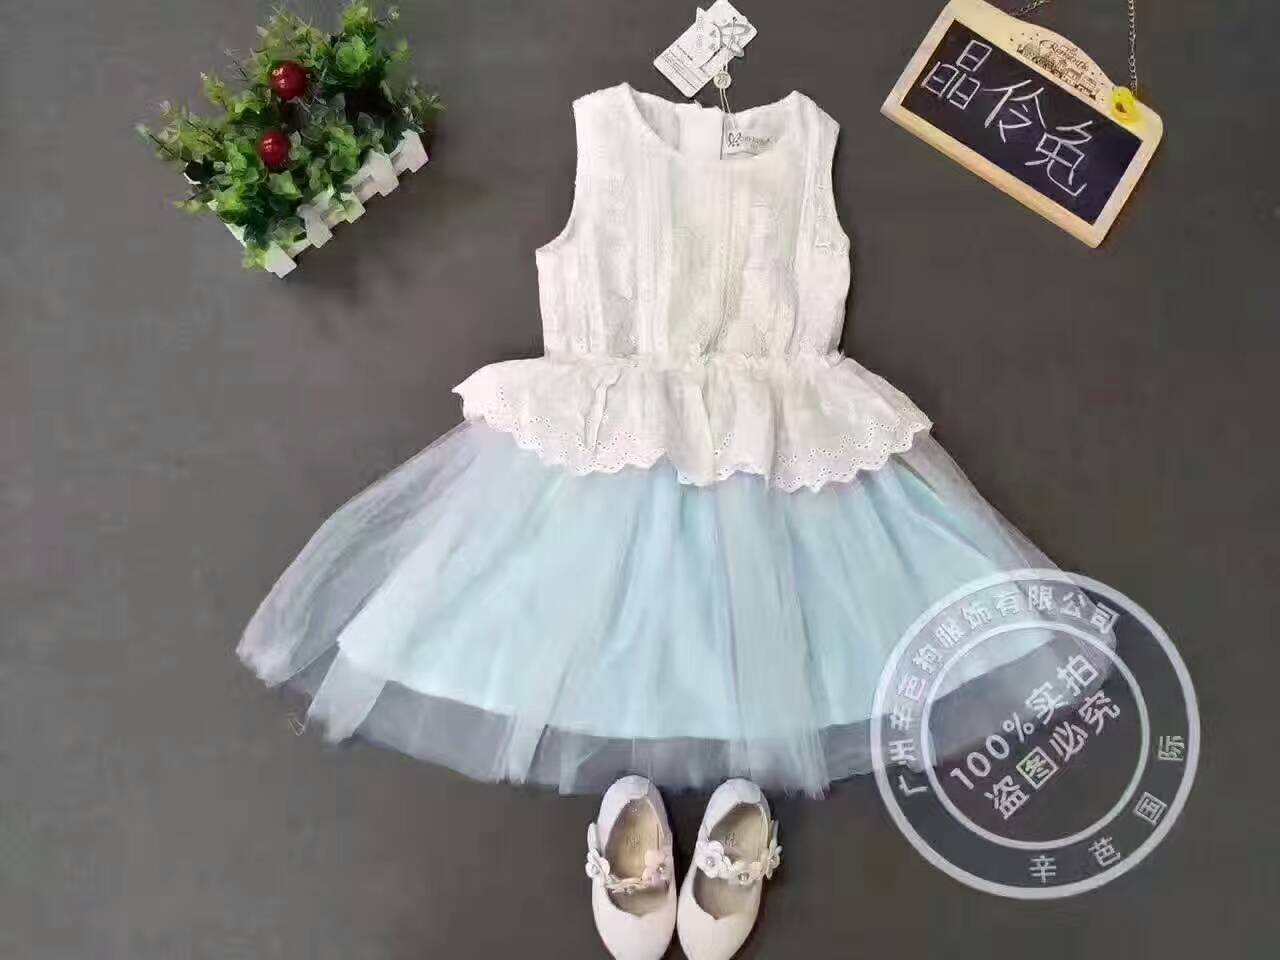 广州辛芭狗服饰之晶伶兔童装品牌2017年夏季新品